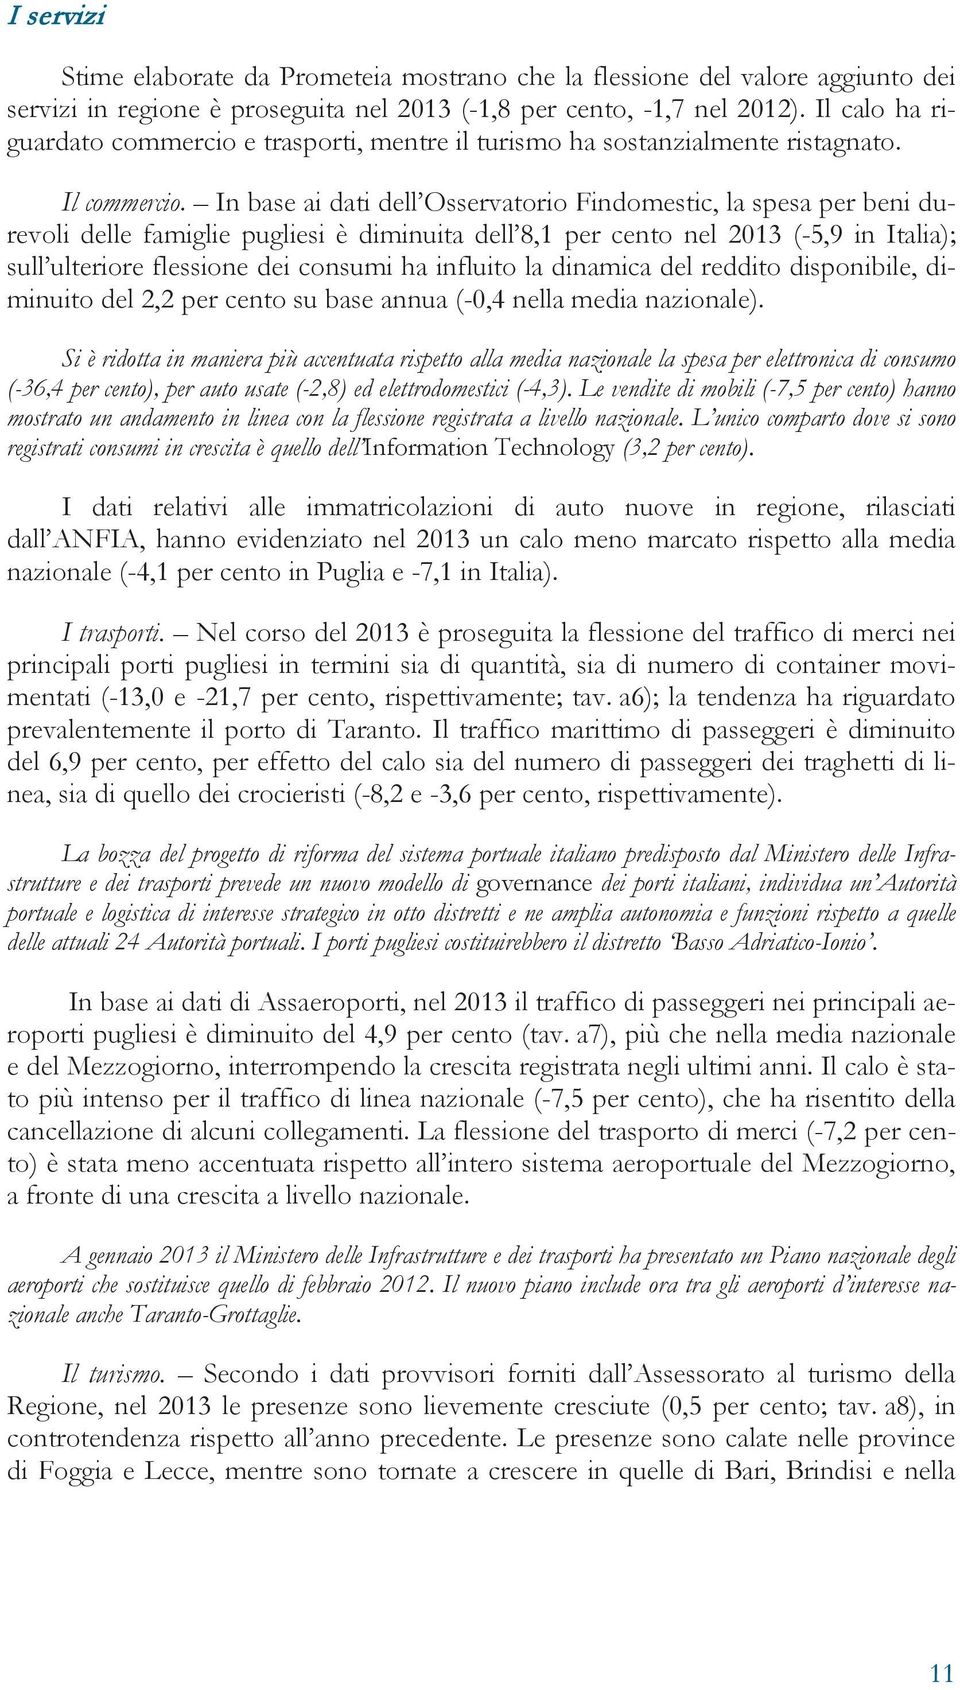 In base ai dati dell Osservatorio Findomestic, la spesa per beni durevoli delle famiglie pugliesi è diminuita dell 8,1 per cento nel 2013 (-5,9 in Italia); sull ulteriore flessione dei consumi ha